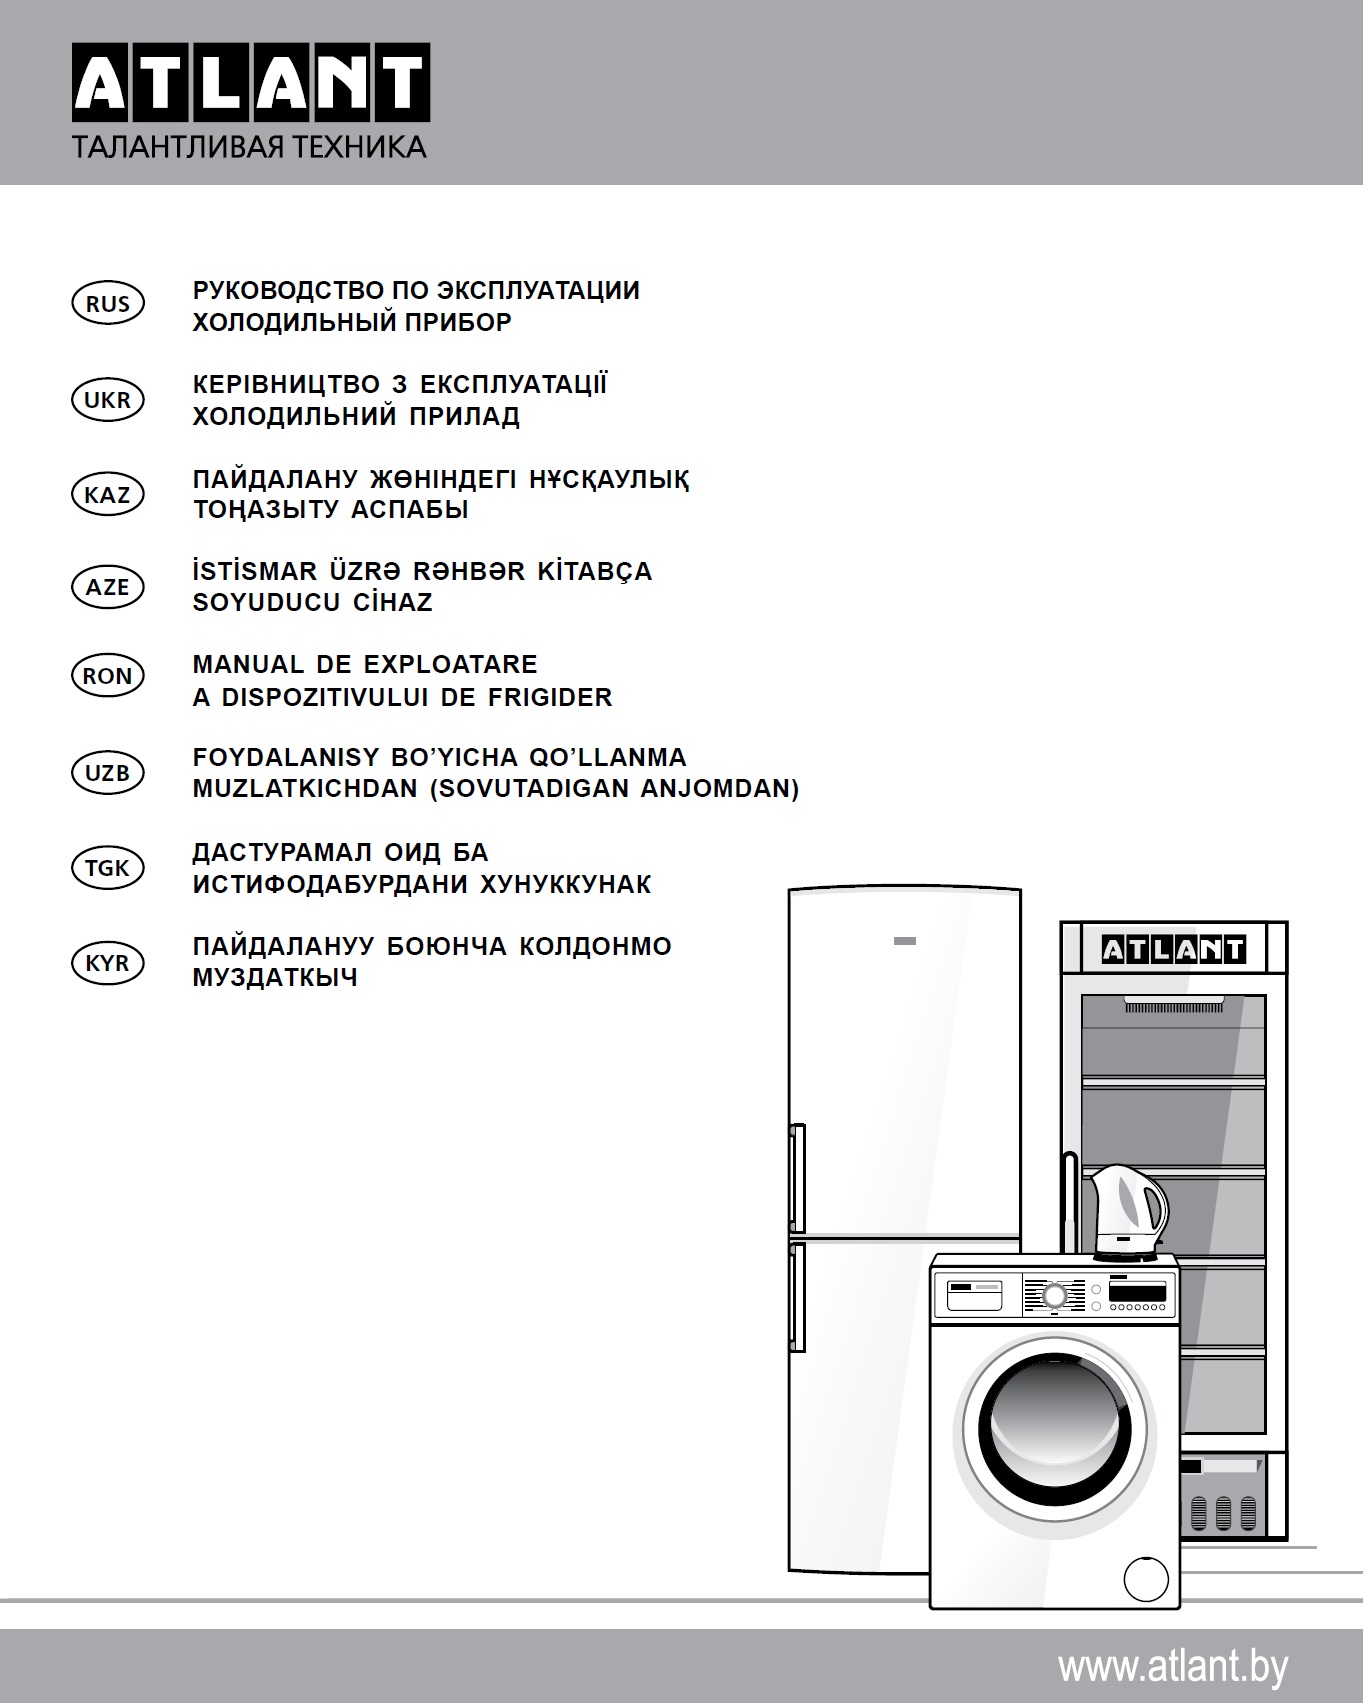 Прокат холодильника МХ-2822 инструкция стр 1